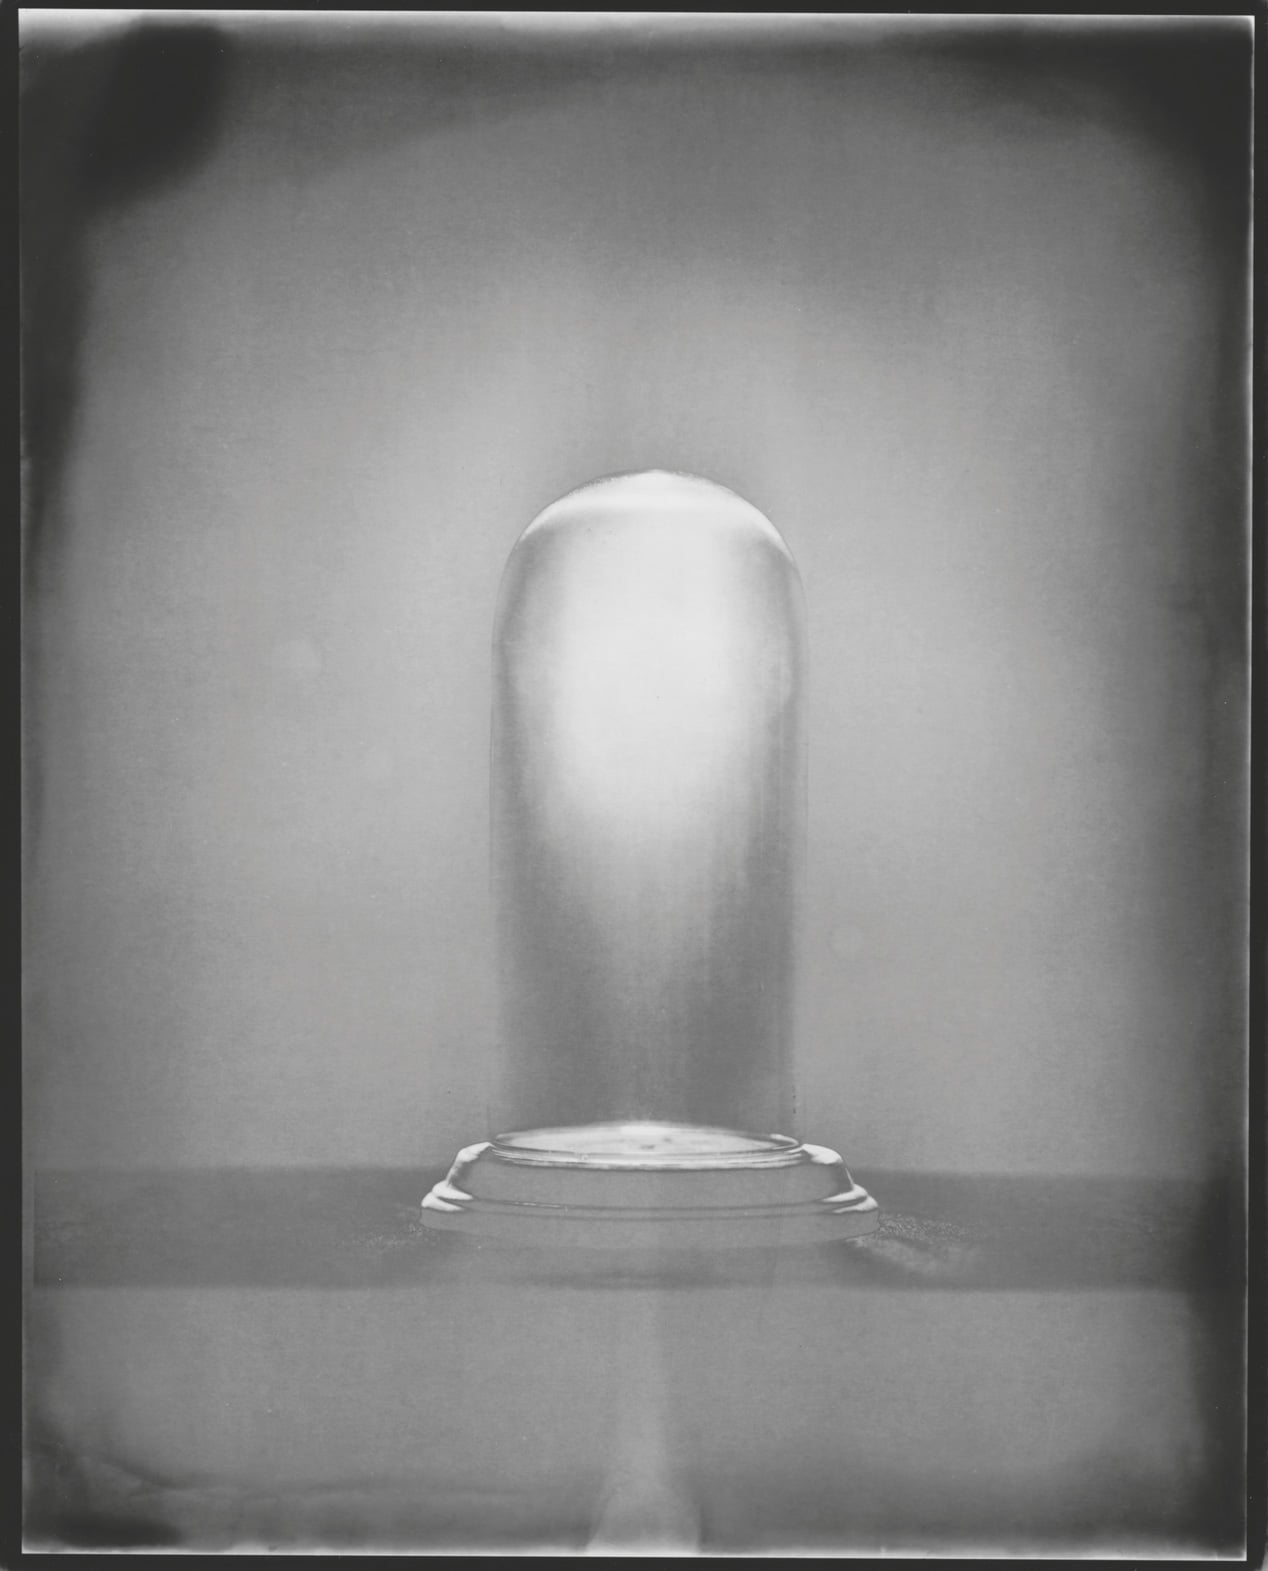 Tine Edel | Unter Glas, 2016 | Belichtung eines 8 x10“ Papiernegativ, 24 x 30 cm analoges Fotopapier von Adox